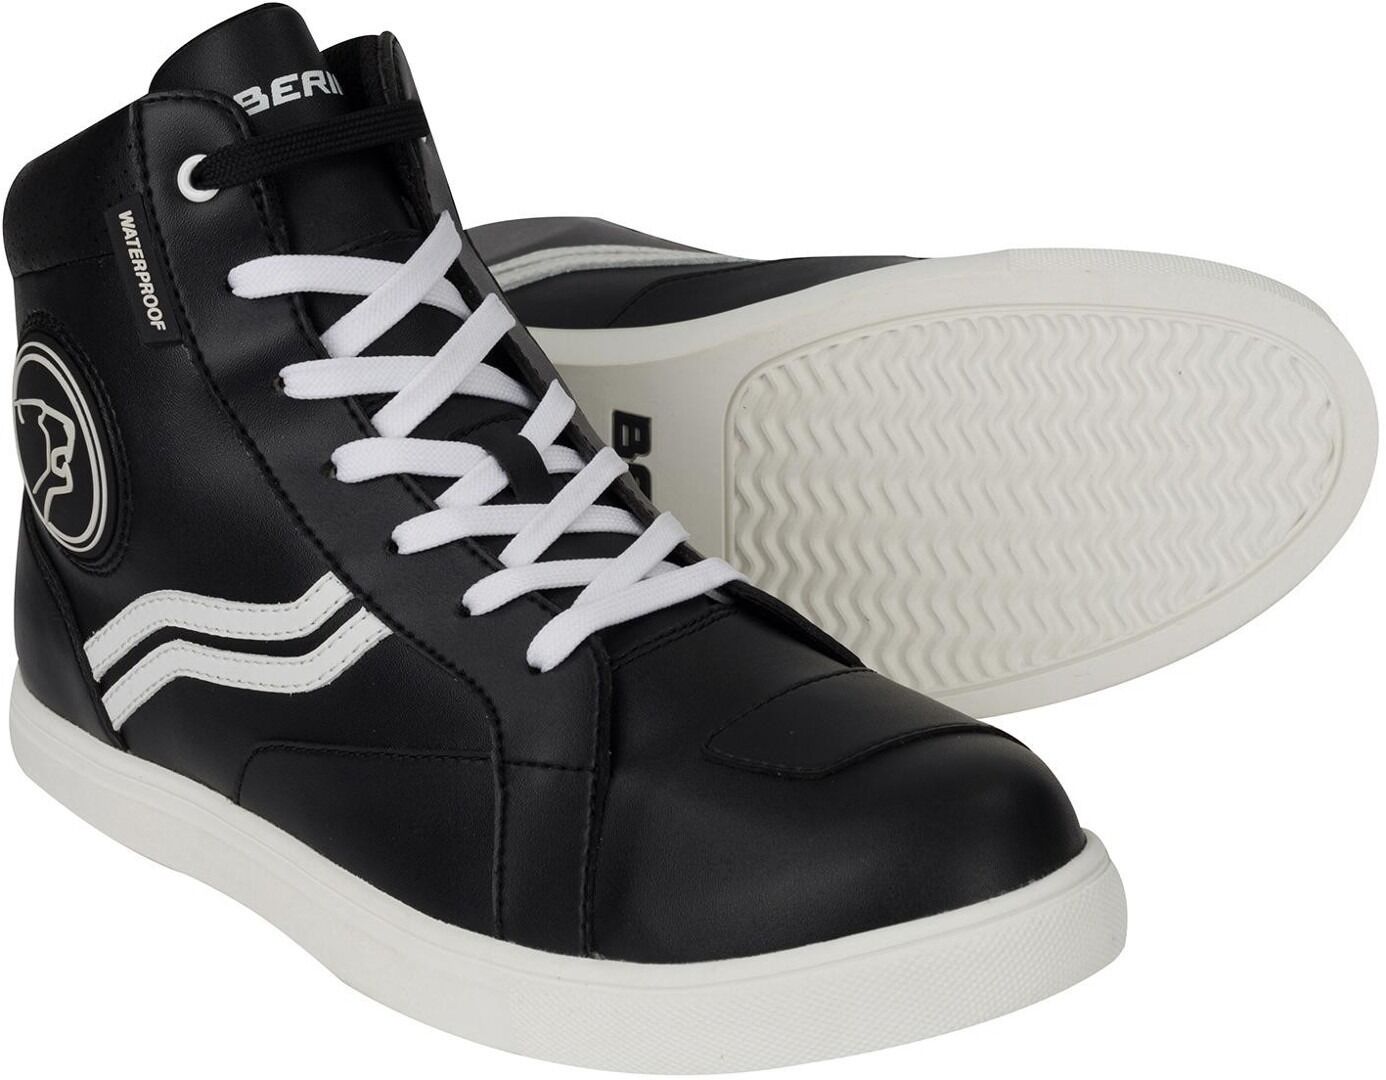 Bering Stars Moottoripyörä kengät  - Musta Valkoinen - Size: 37